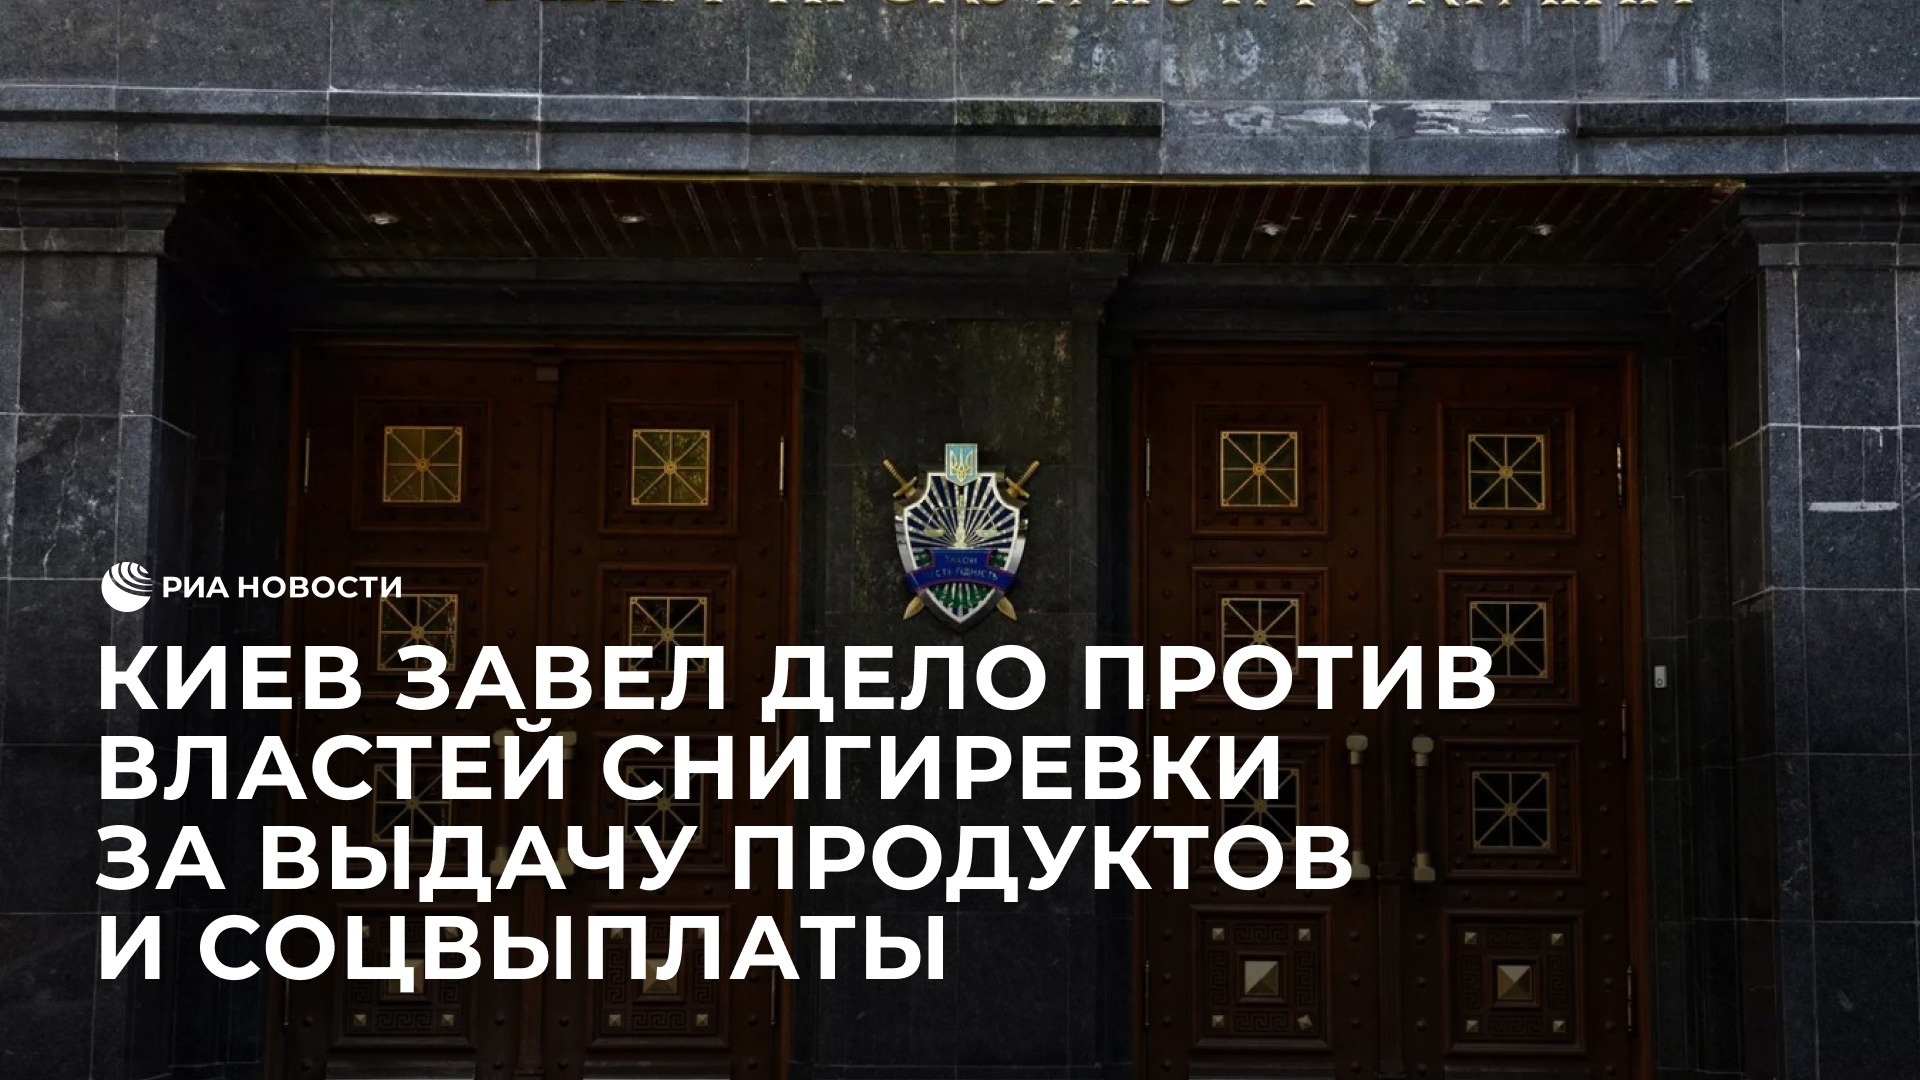 Киев завел дело против властей Снигиревки за выдачу продуктов и соцвыплаты